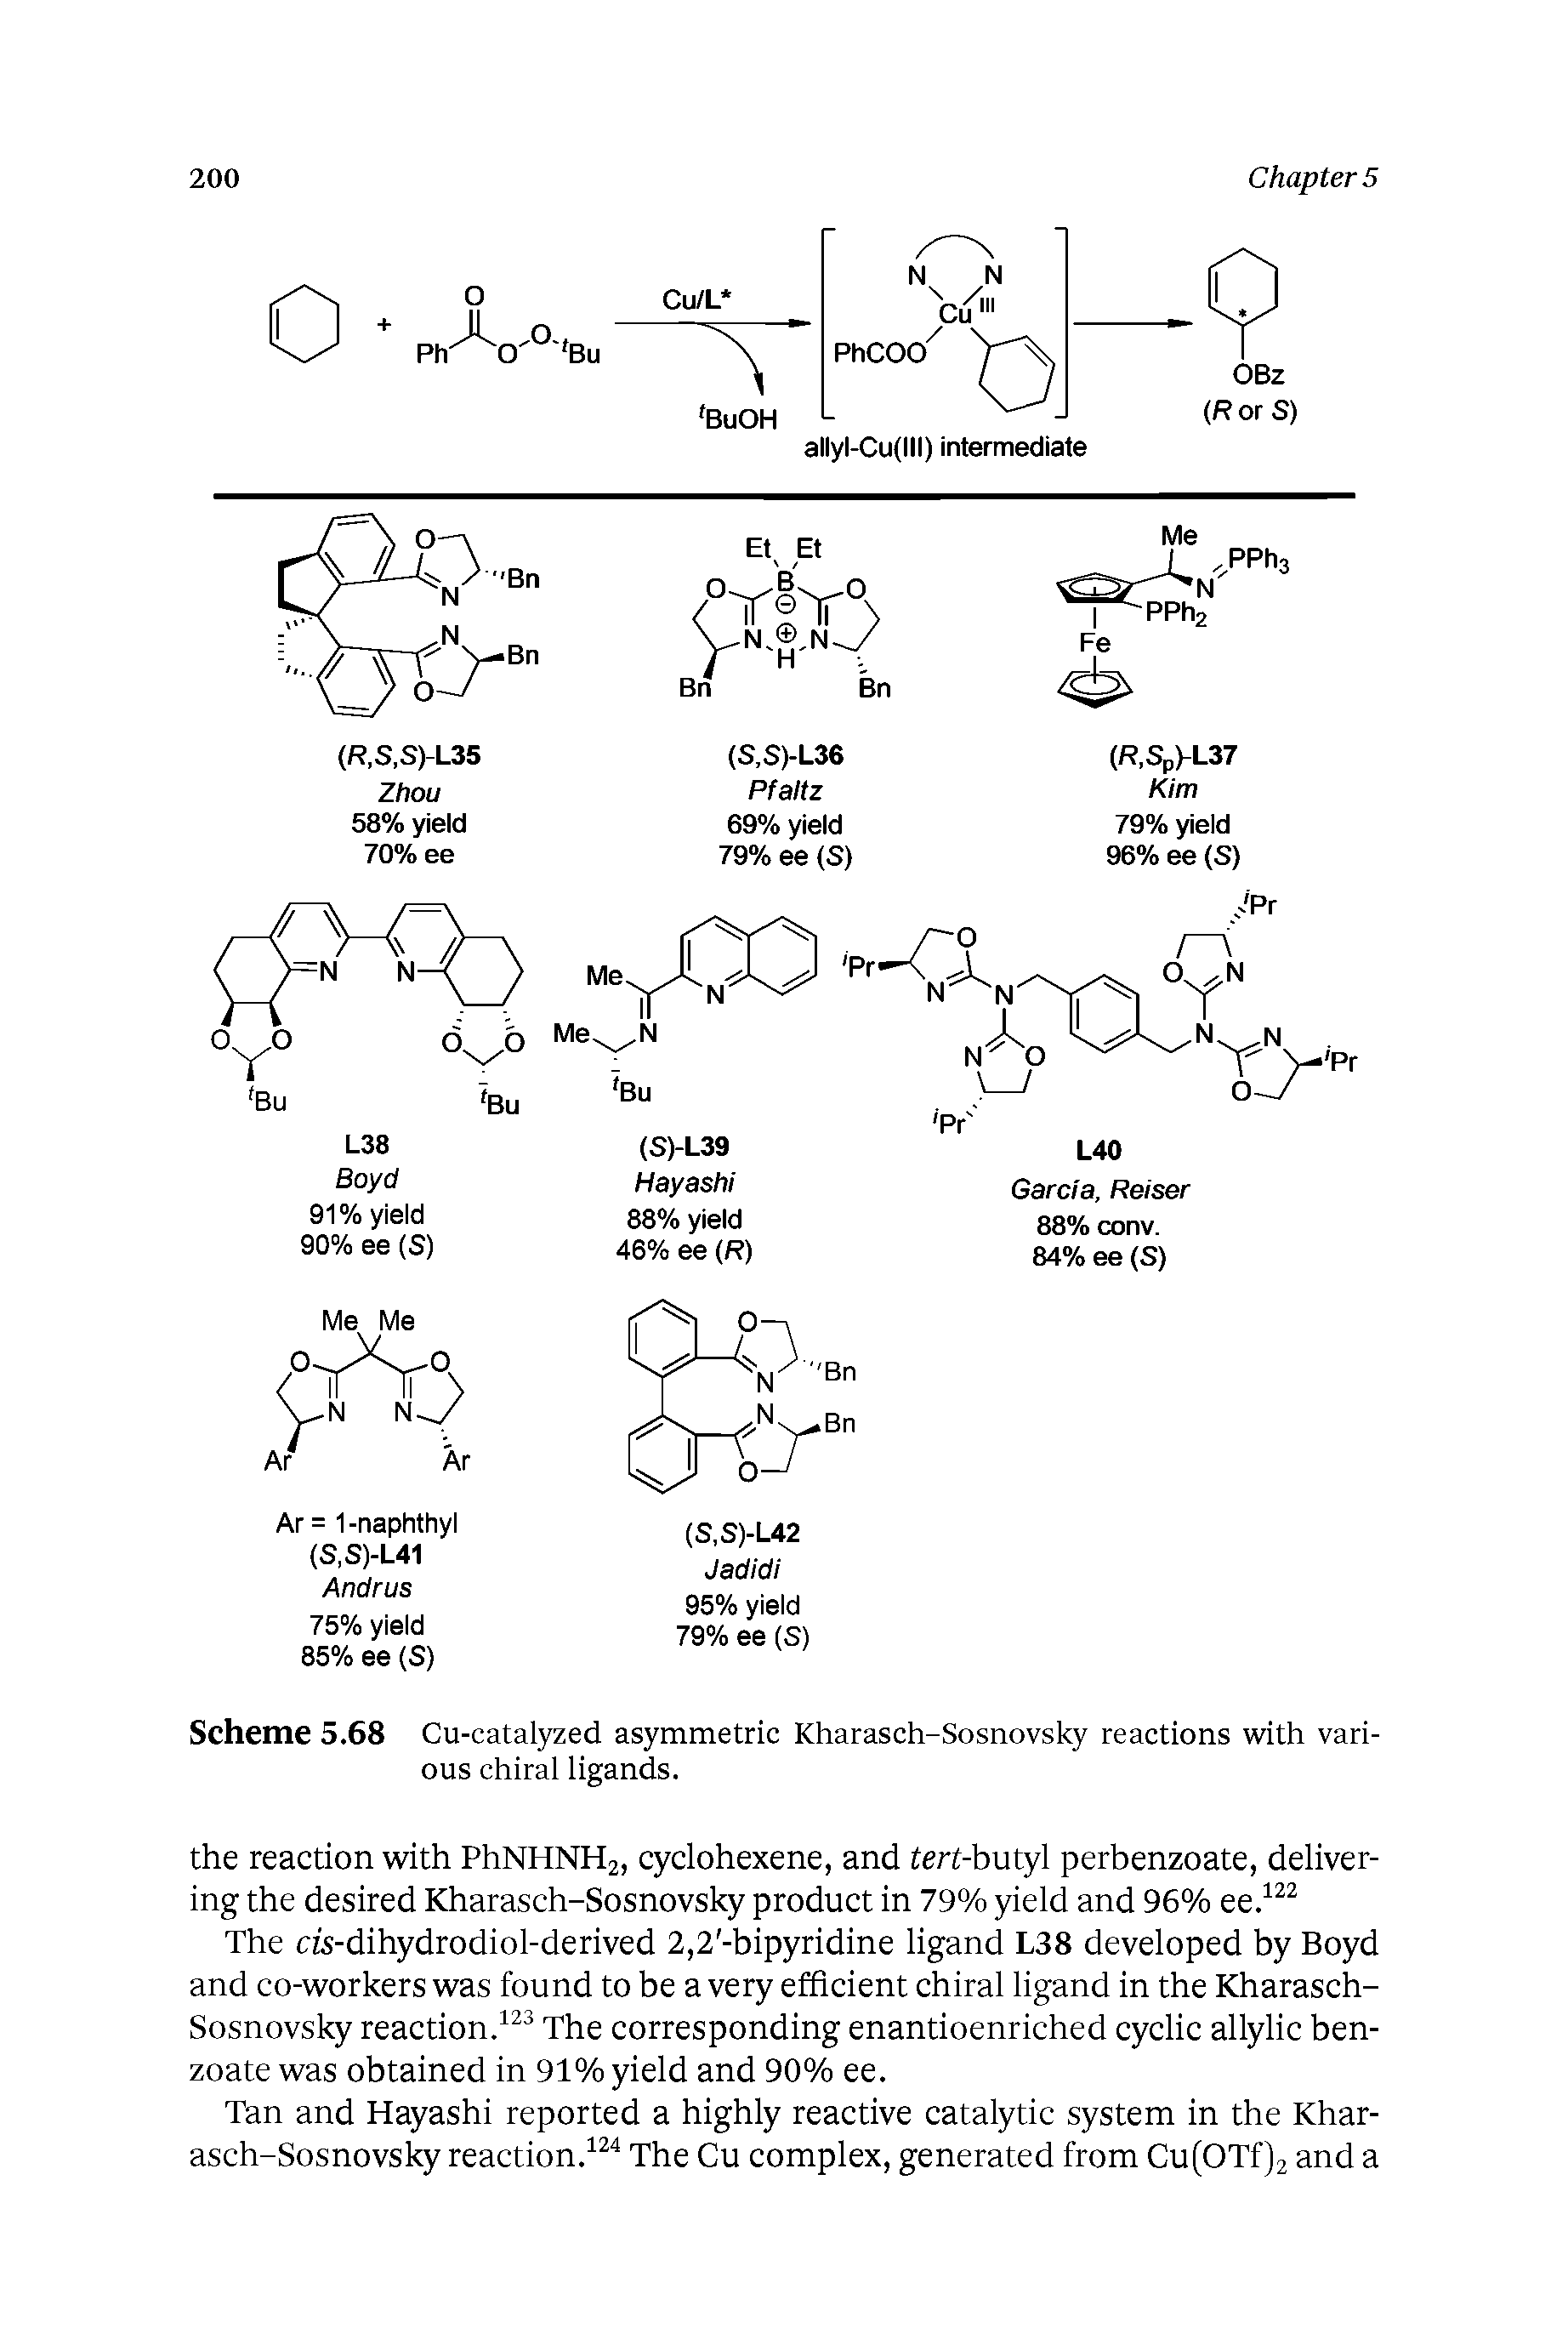 Scheme 5.68 Cu-catalyzed asymmetric Kharasch-Sosnovsky reactions with various chiral ligands.